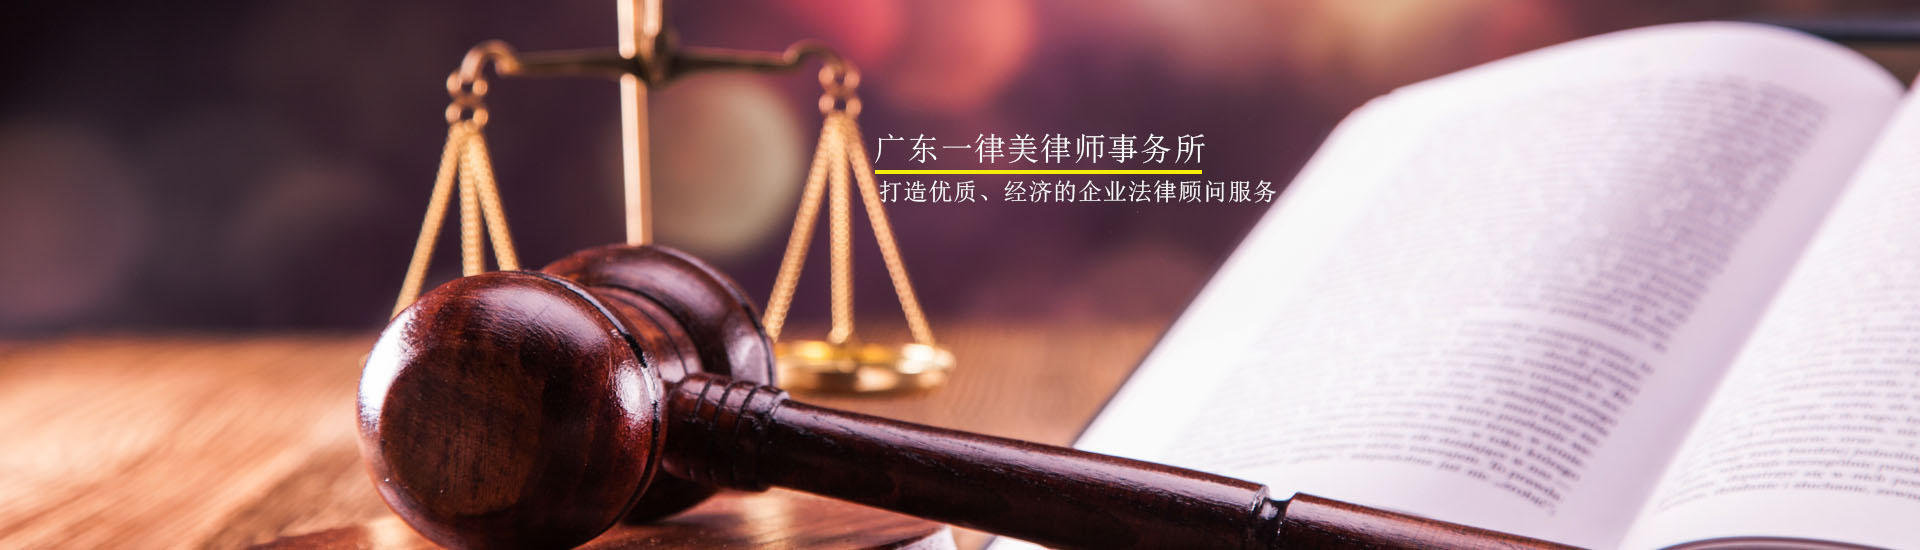 深圳企业法律顾问服务